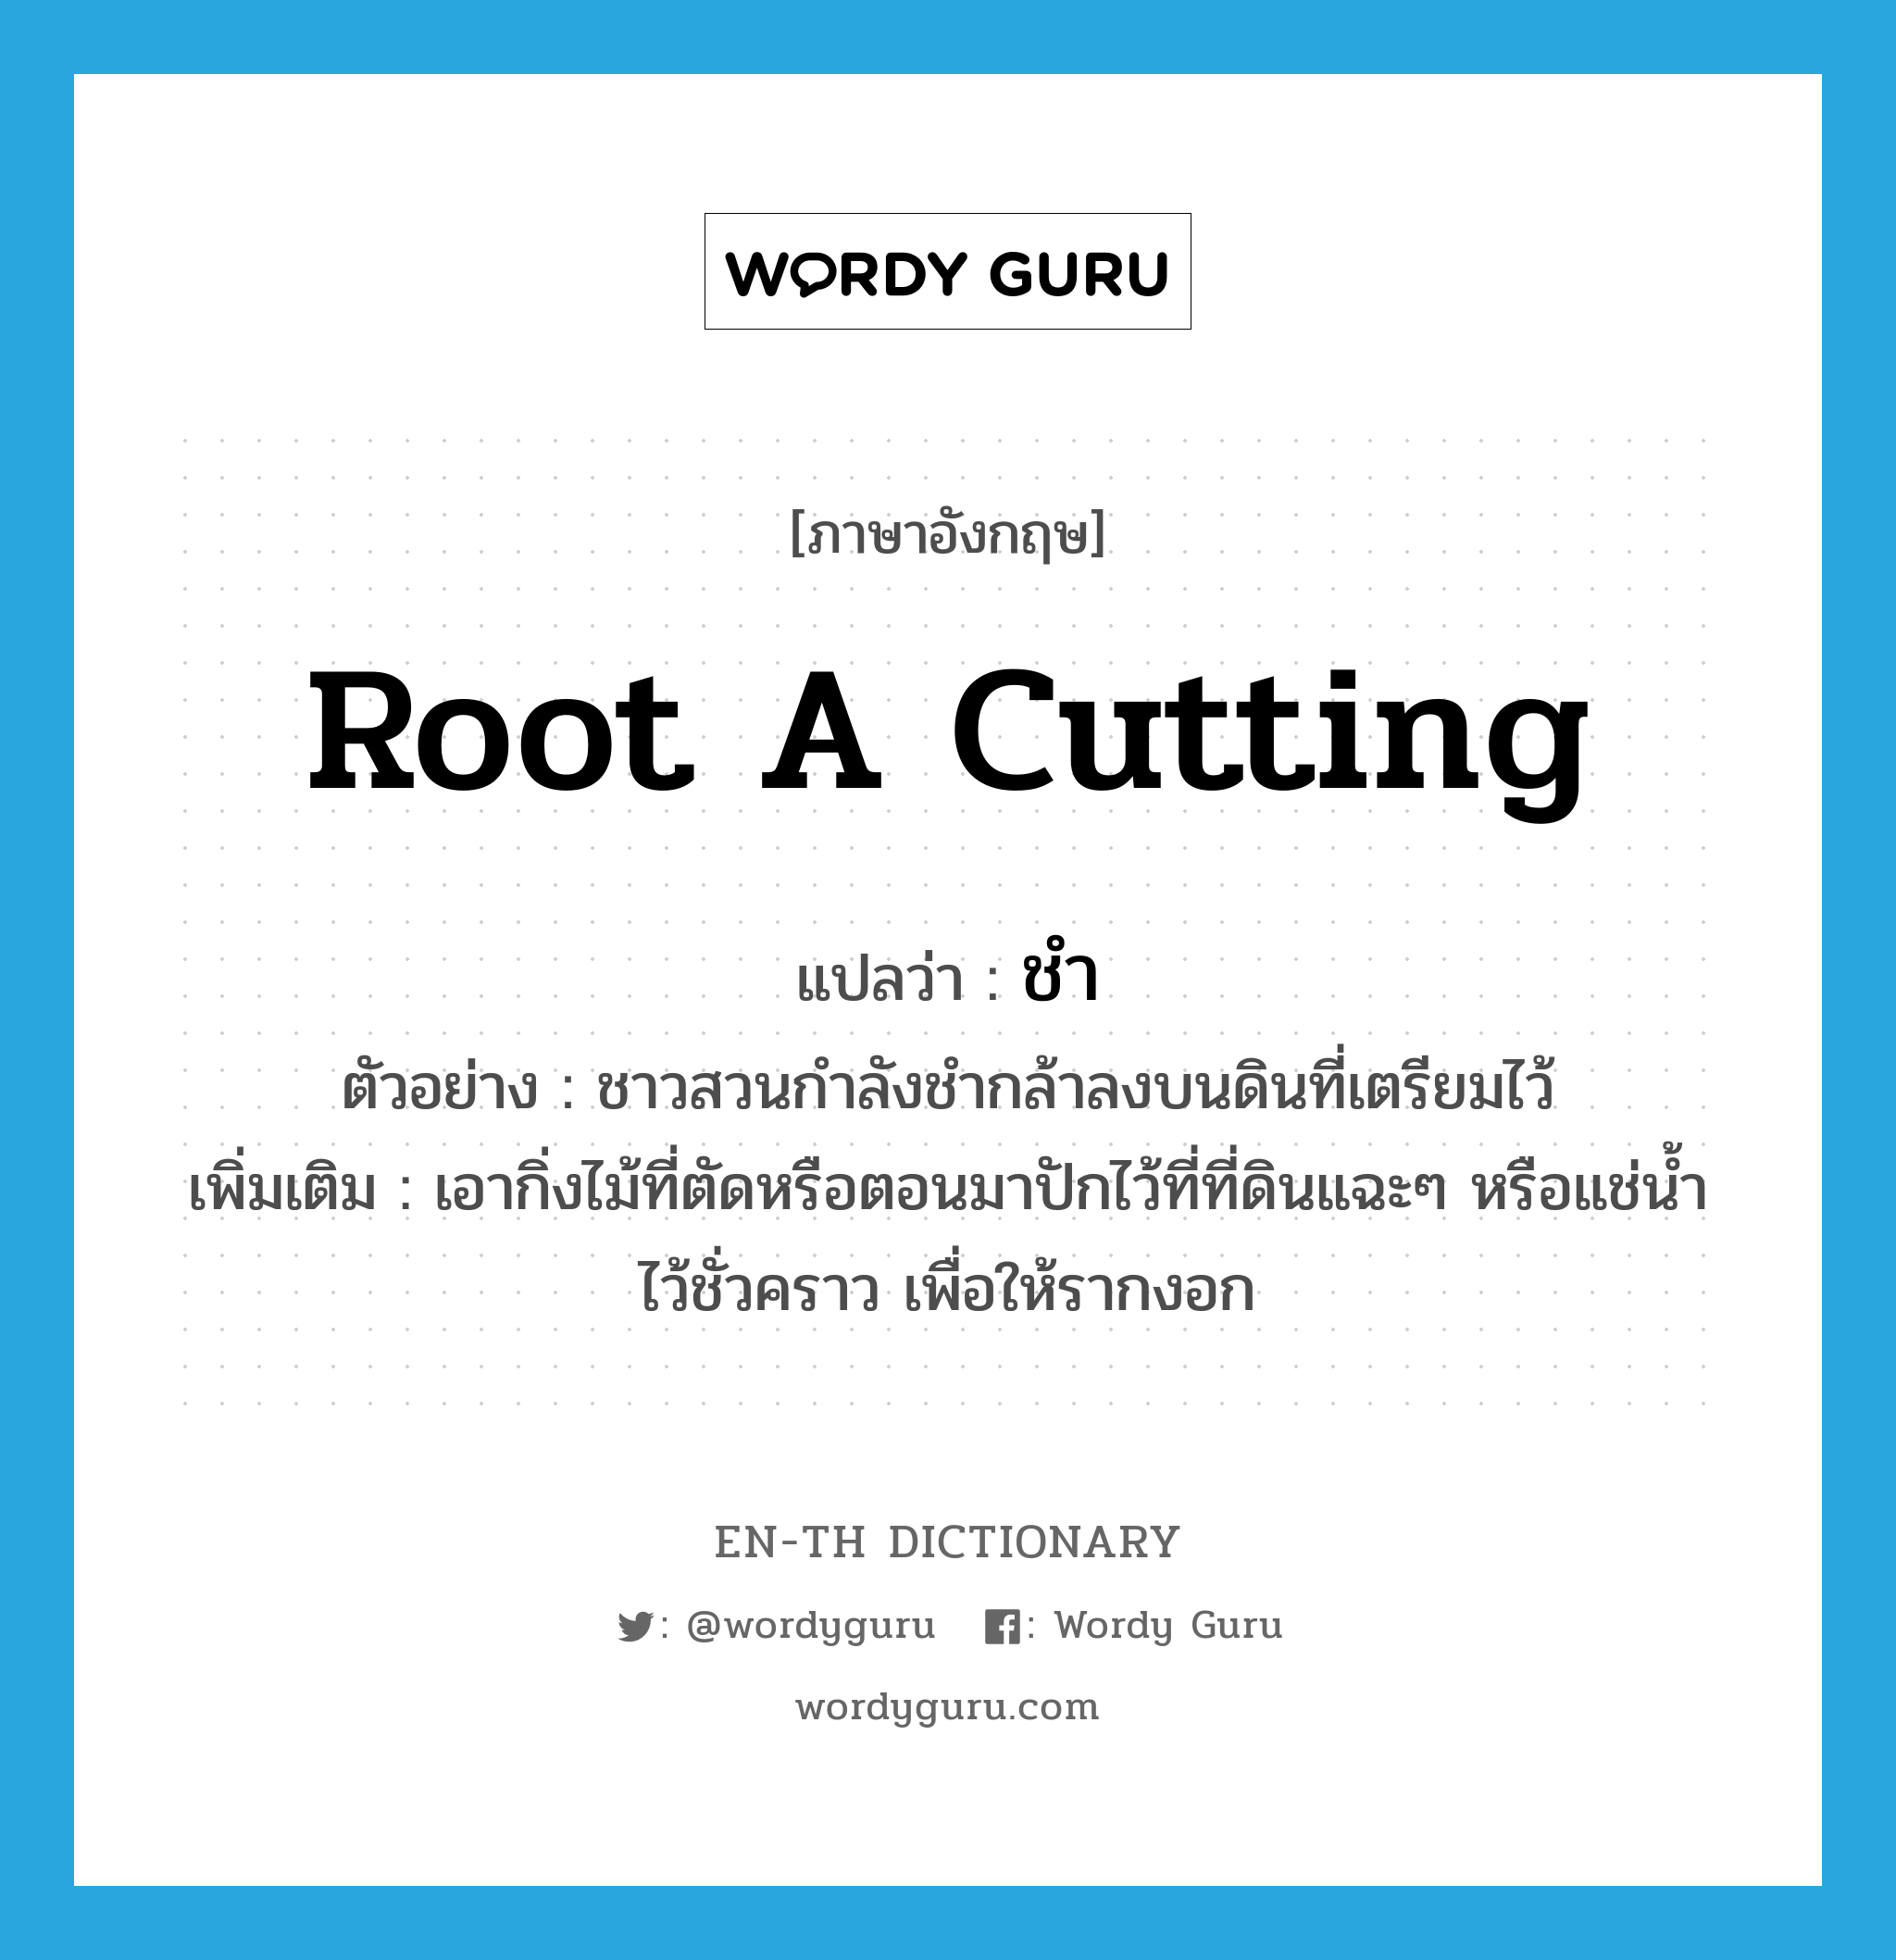 root a cutting แปลว่า?, คำศัพท์ภาษาอังกฤษ root a cutting แปลว่า ชำ ประเภท V ตัวอย่าง ชาวสวนกำลังชำกล้าลงบนดินที่เตรียมไว้ เพิ่มเติม เอากิ่งไม้ที่ตัดหรือตอนมาปักไว้ที่ที่ดินแฉะๆ หรือแช่น้ำไว้ชั่วคราว เพื่อให้รากงอก หมวด V